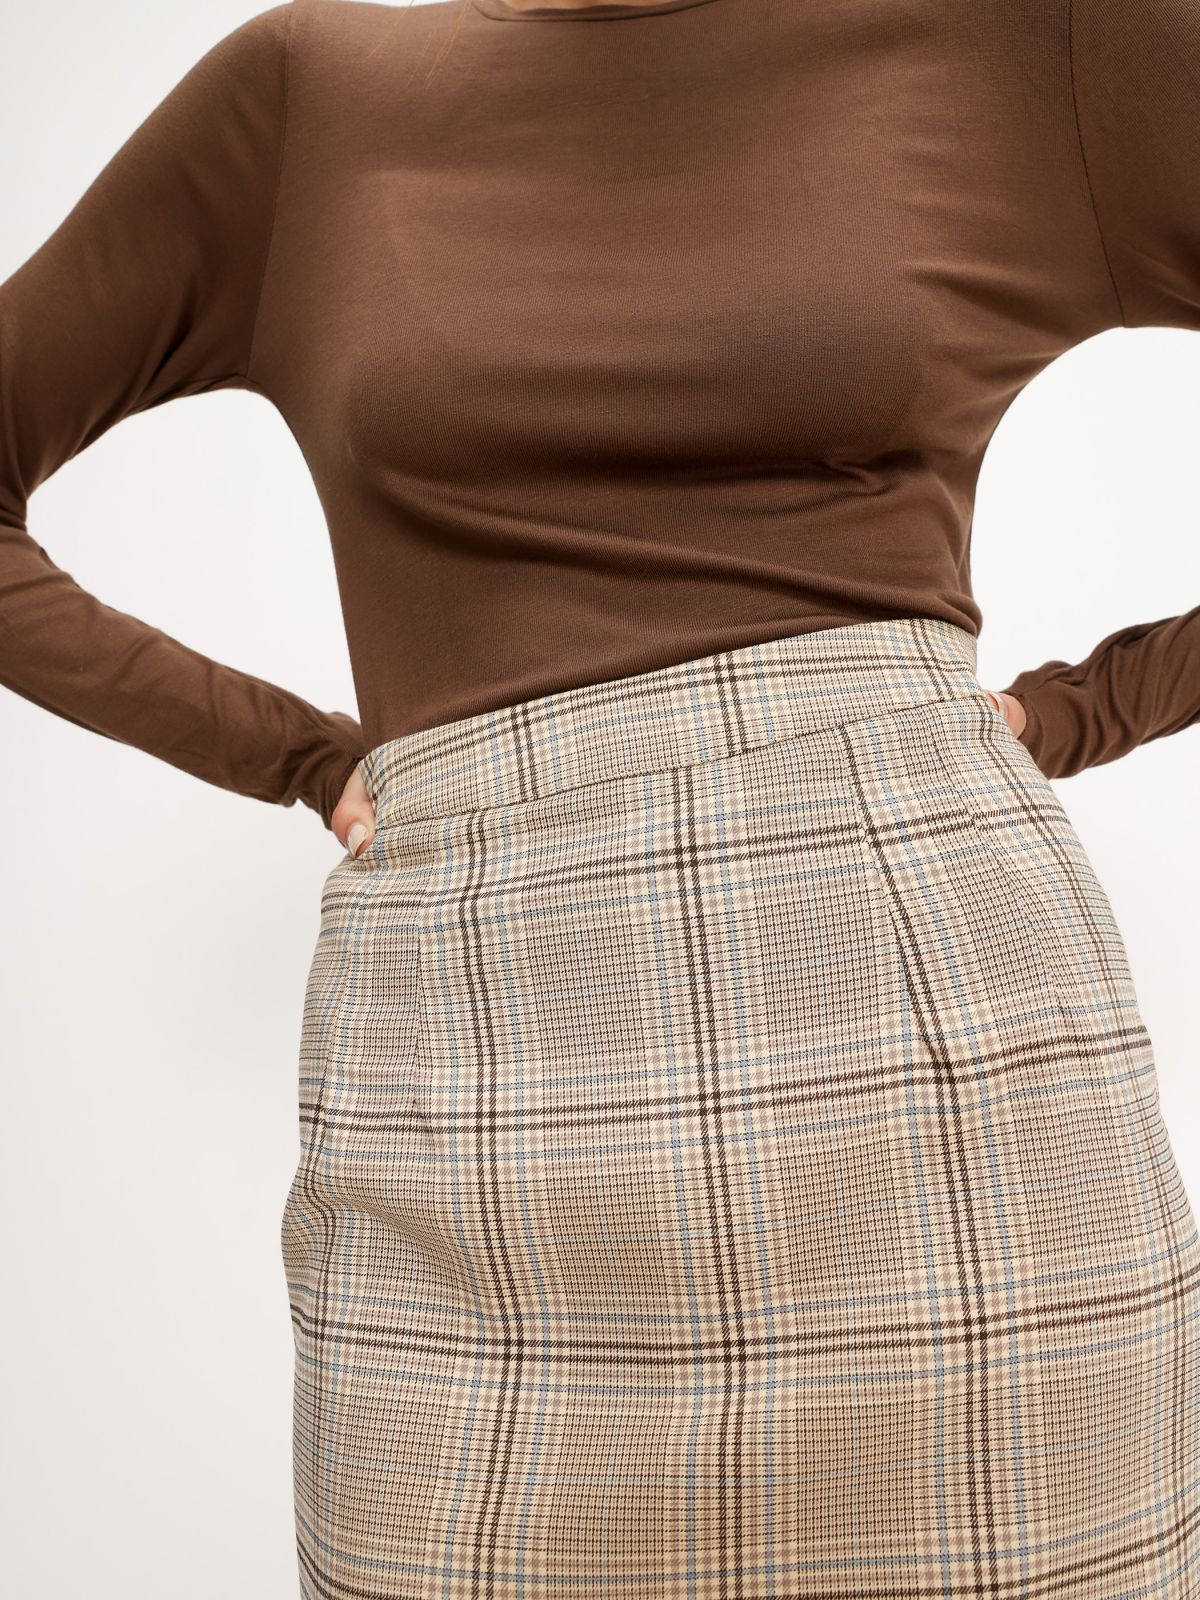  חצאית מיני בהדפס של TERMINAL X